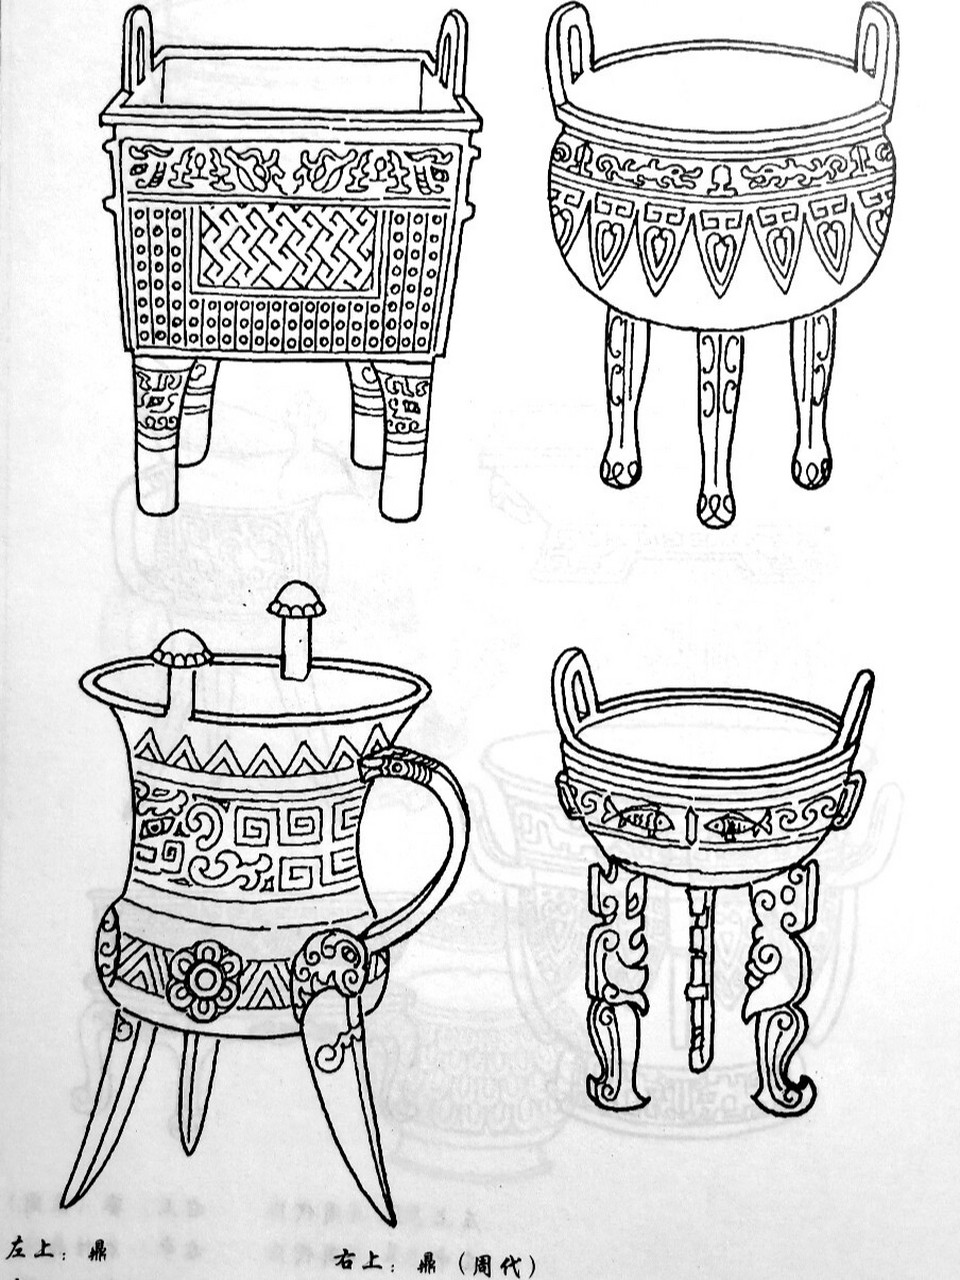 画痴92传统图案器物篇(青铜器2) 上面提到青铜器的种类很多,主要分